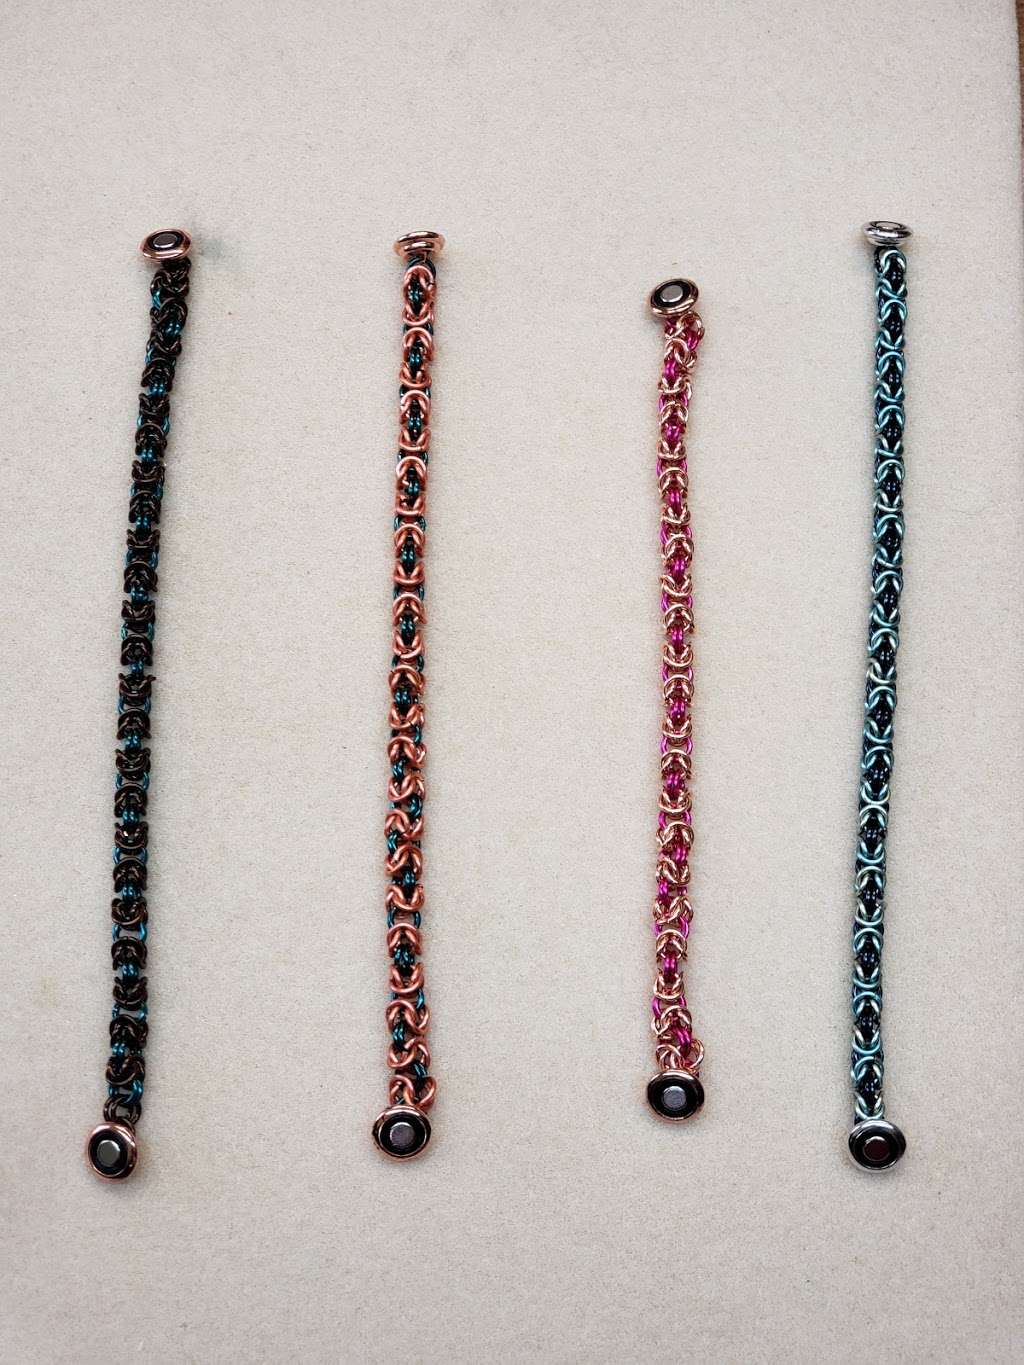 Originals Beads and gems